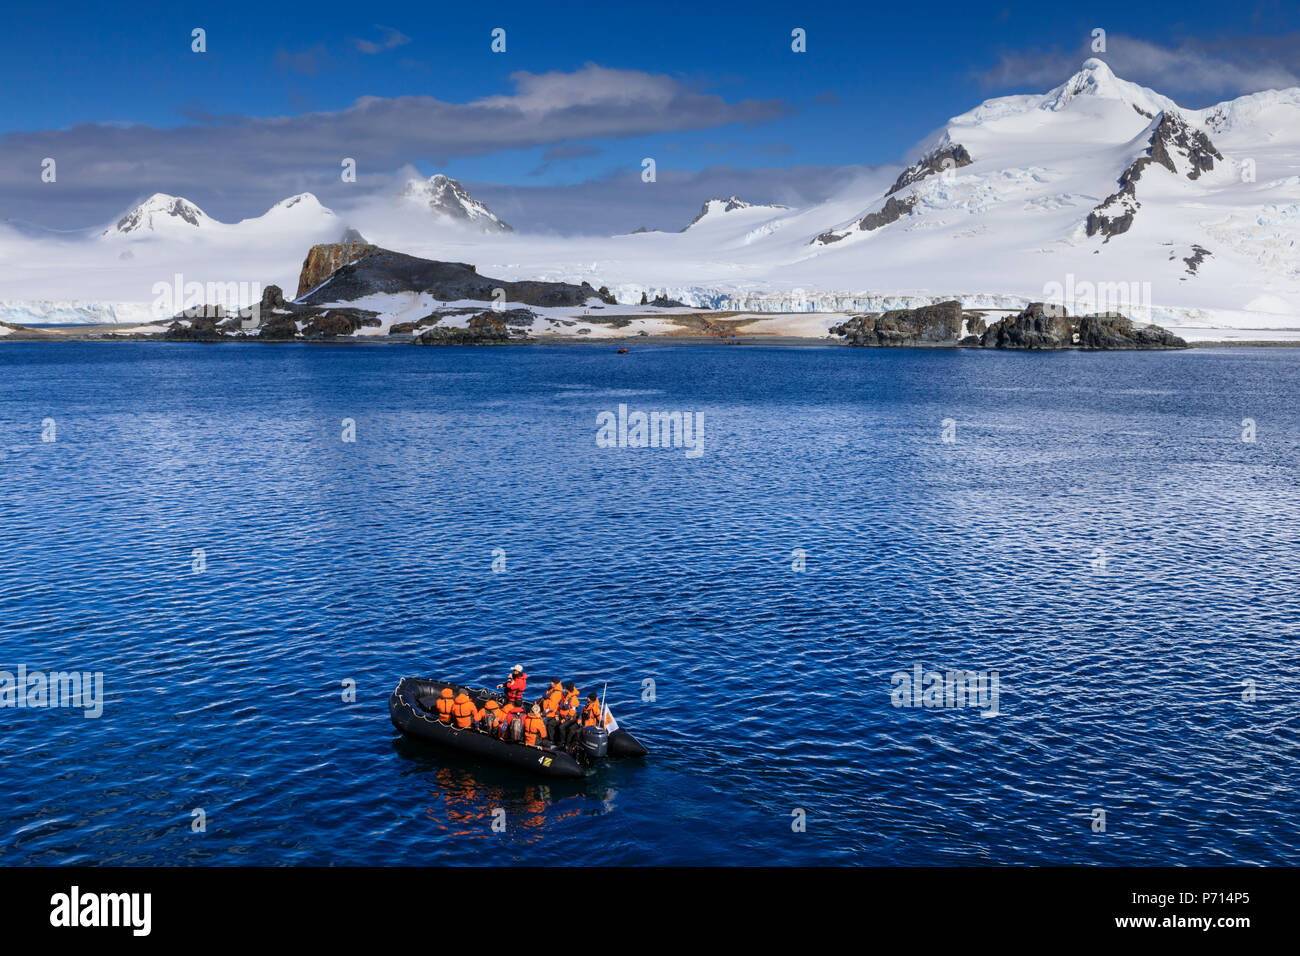 Zodiac expédition, touristes, plage du débarquement, de la demi-lune, l'île Livingston Island View, Îles Shetland du Sud, l'Antarctique, régions polaires Banque D'Images